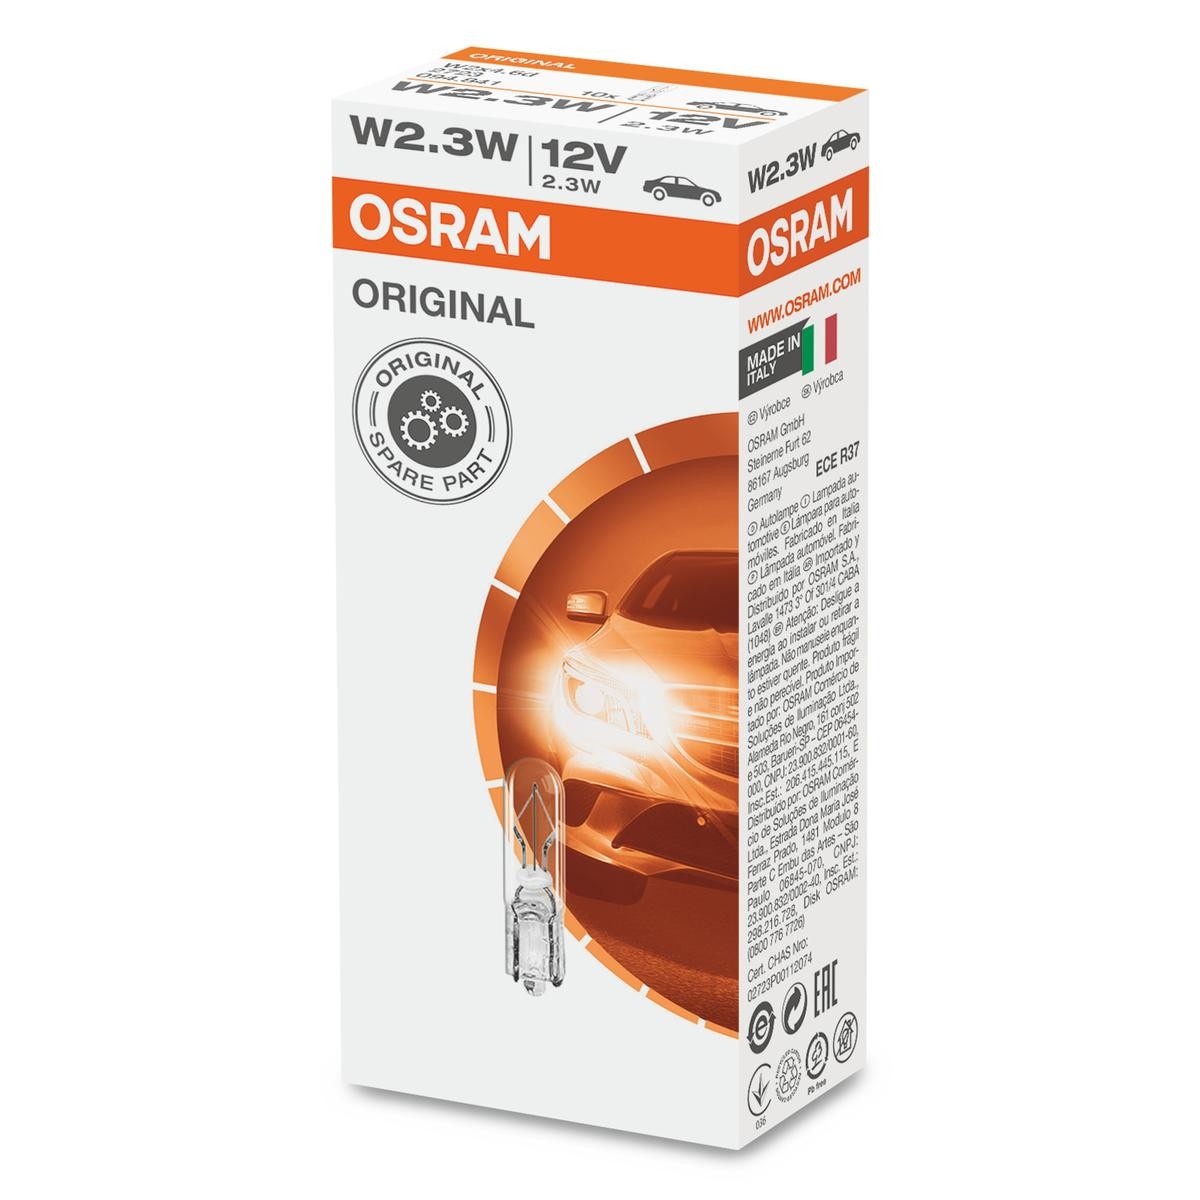 W2,3W OSRAM ORIGINAL LINE 12V 2,3W, W2,3W Bulb 2723 buy